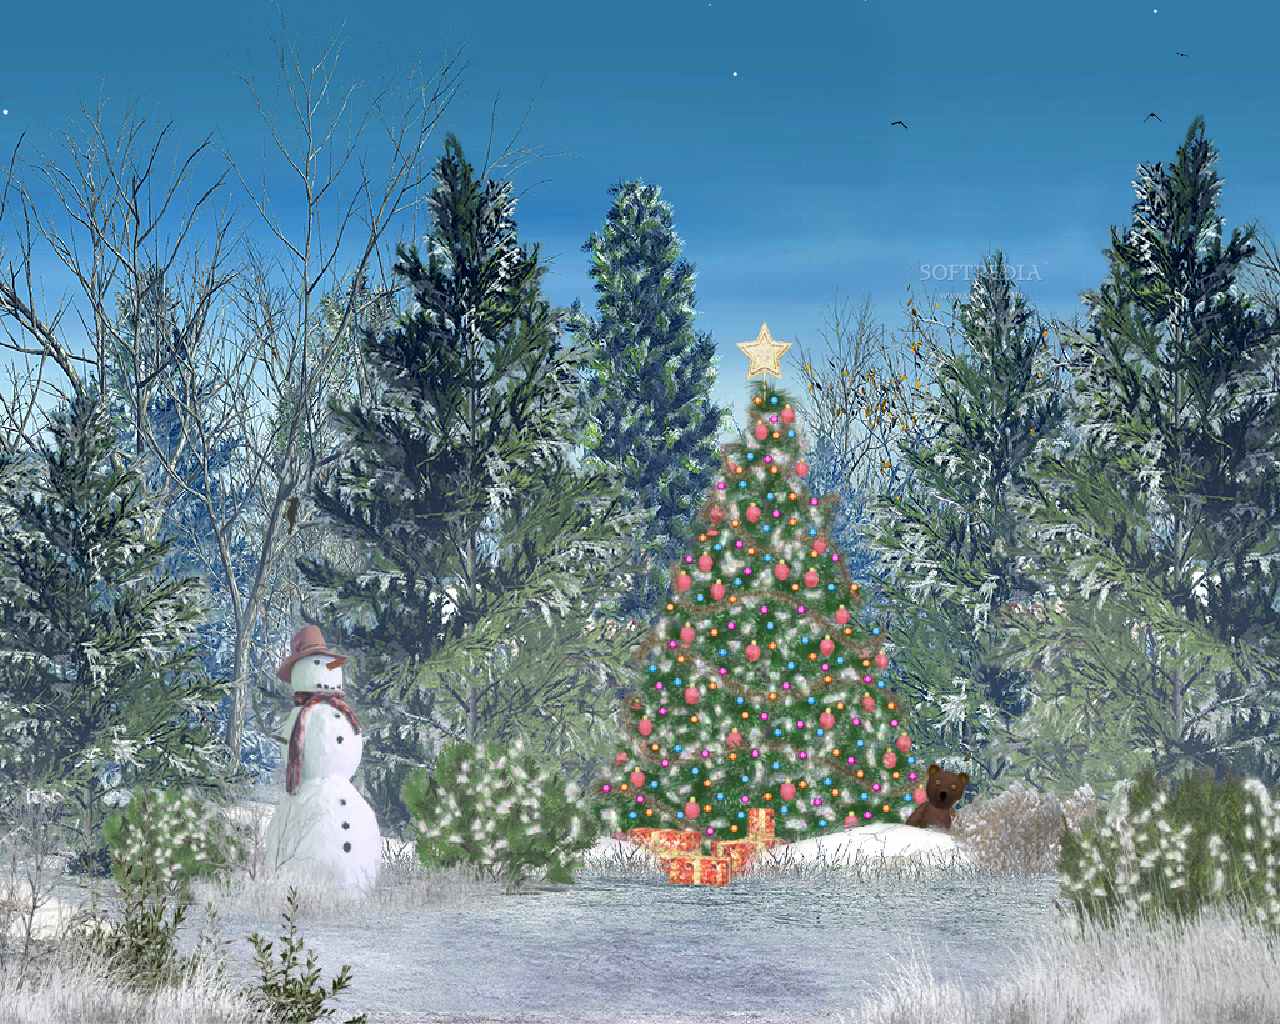 http://www.softpedia.com/screenshots/Christmas-Forest-Animated-Screensaver_1.jpg